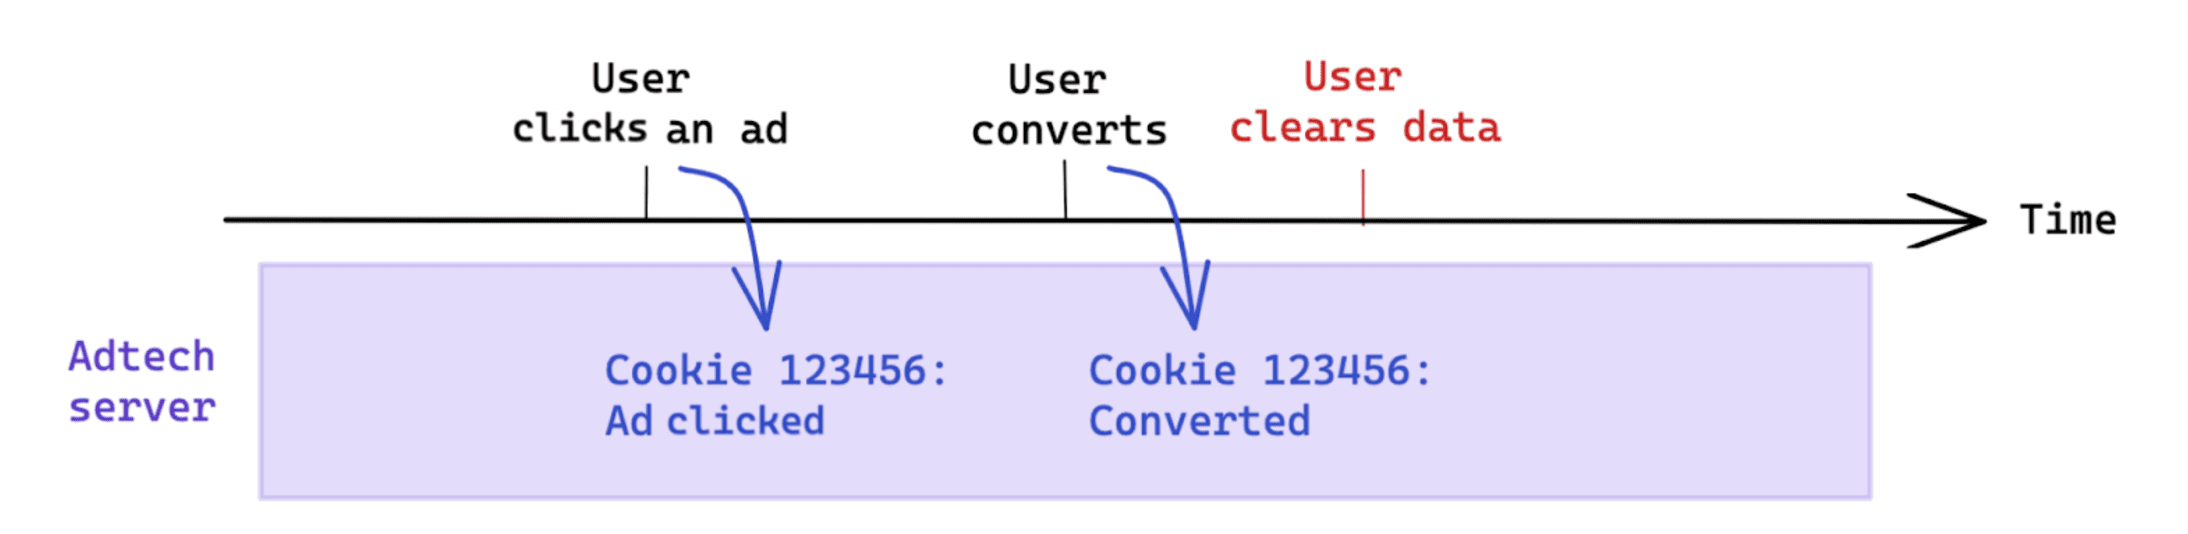 전환 후 사용자가 데이터를 삭제하는 것은 쿠키 기반 측정에 영향을 주지 않습니다.